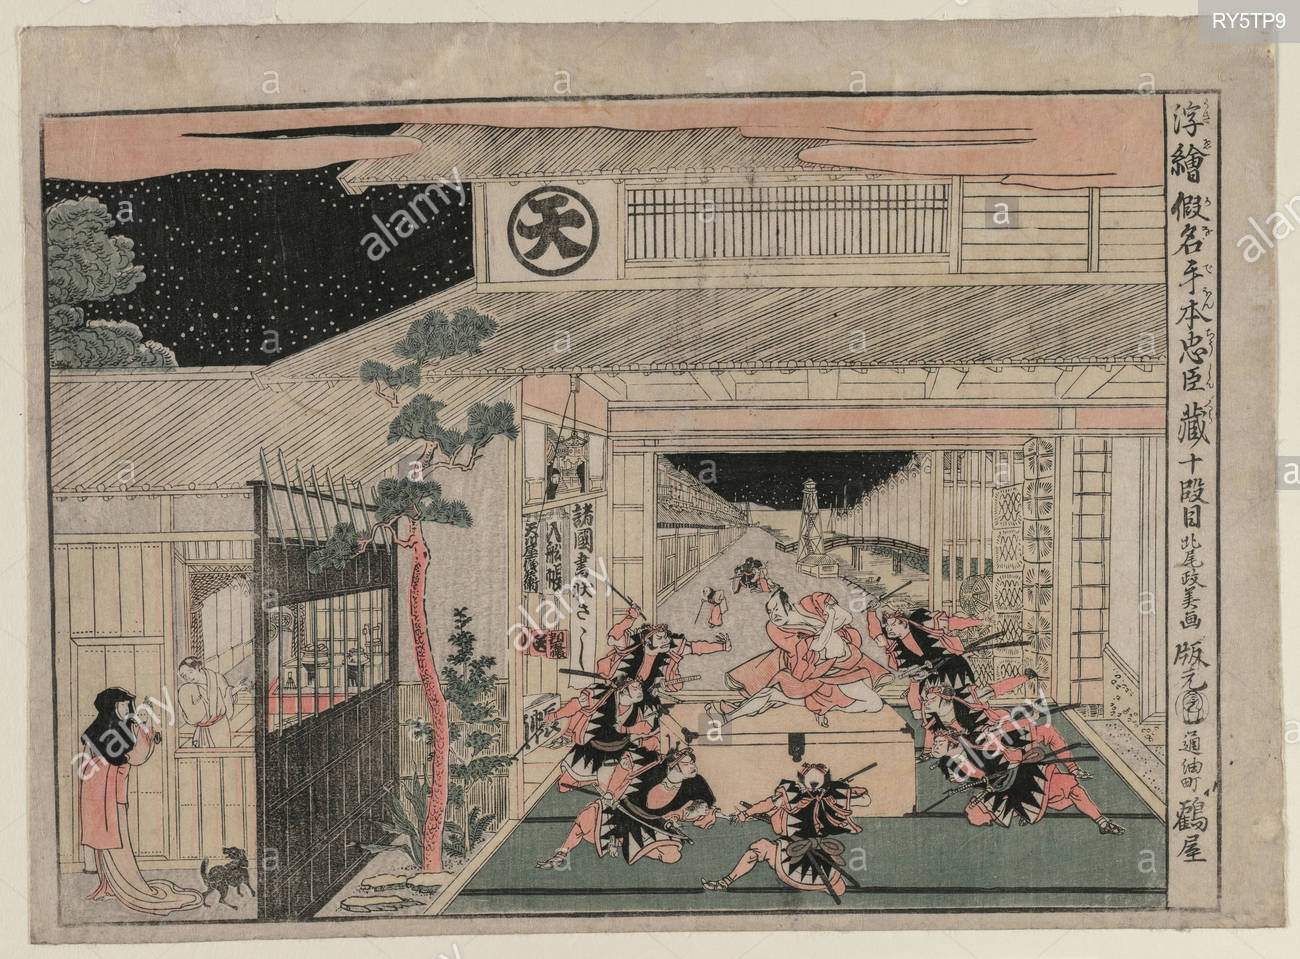 chushingura akte x aus der serie perspektive bilder fur schatzkammer der treue c 1790s kitao masayoshi japanisch 1761 1824 farbe holzschnitt bild 303 x 427 cm 11 1516 x 16 1316 in mit rand 335 x 46 cm 13 14 x 18 18 in ry5tp9